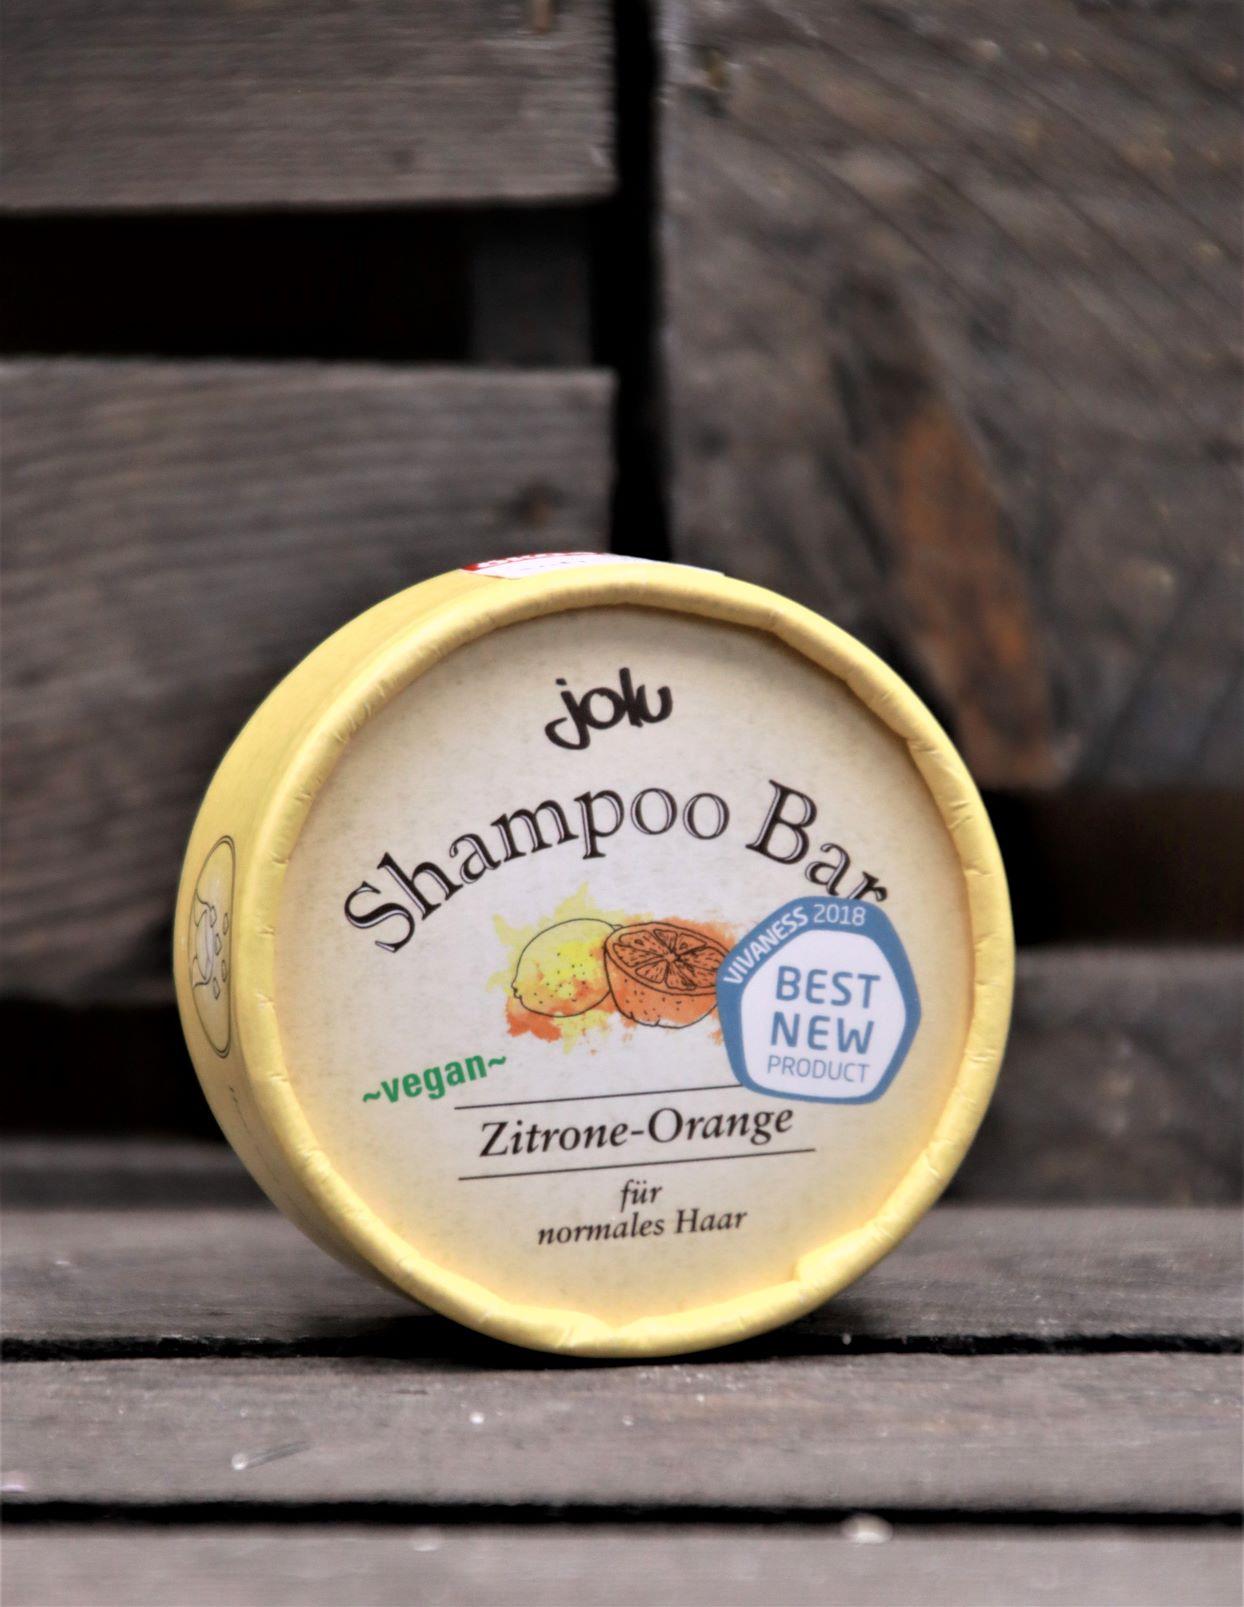 Shampoo Bar Zitrone-Orange